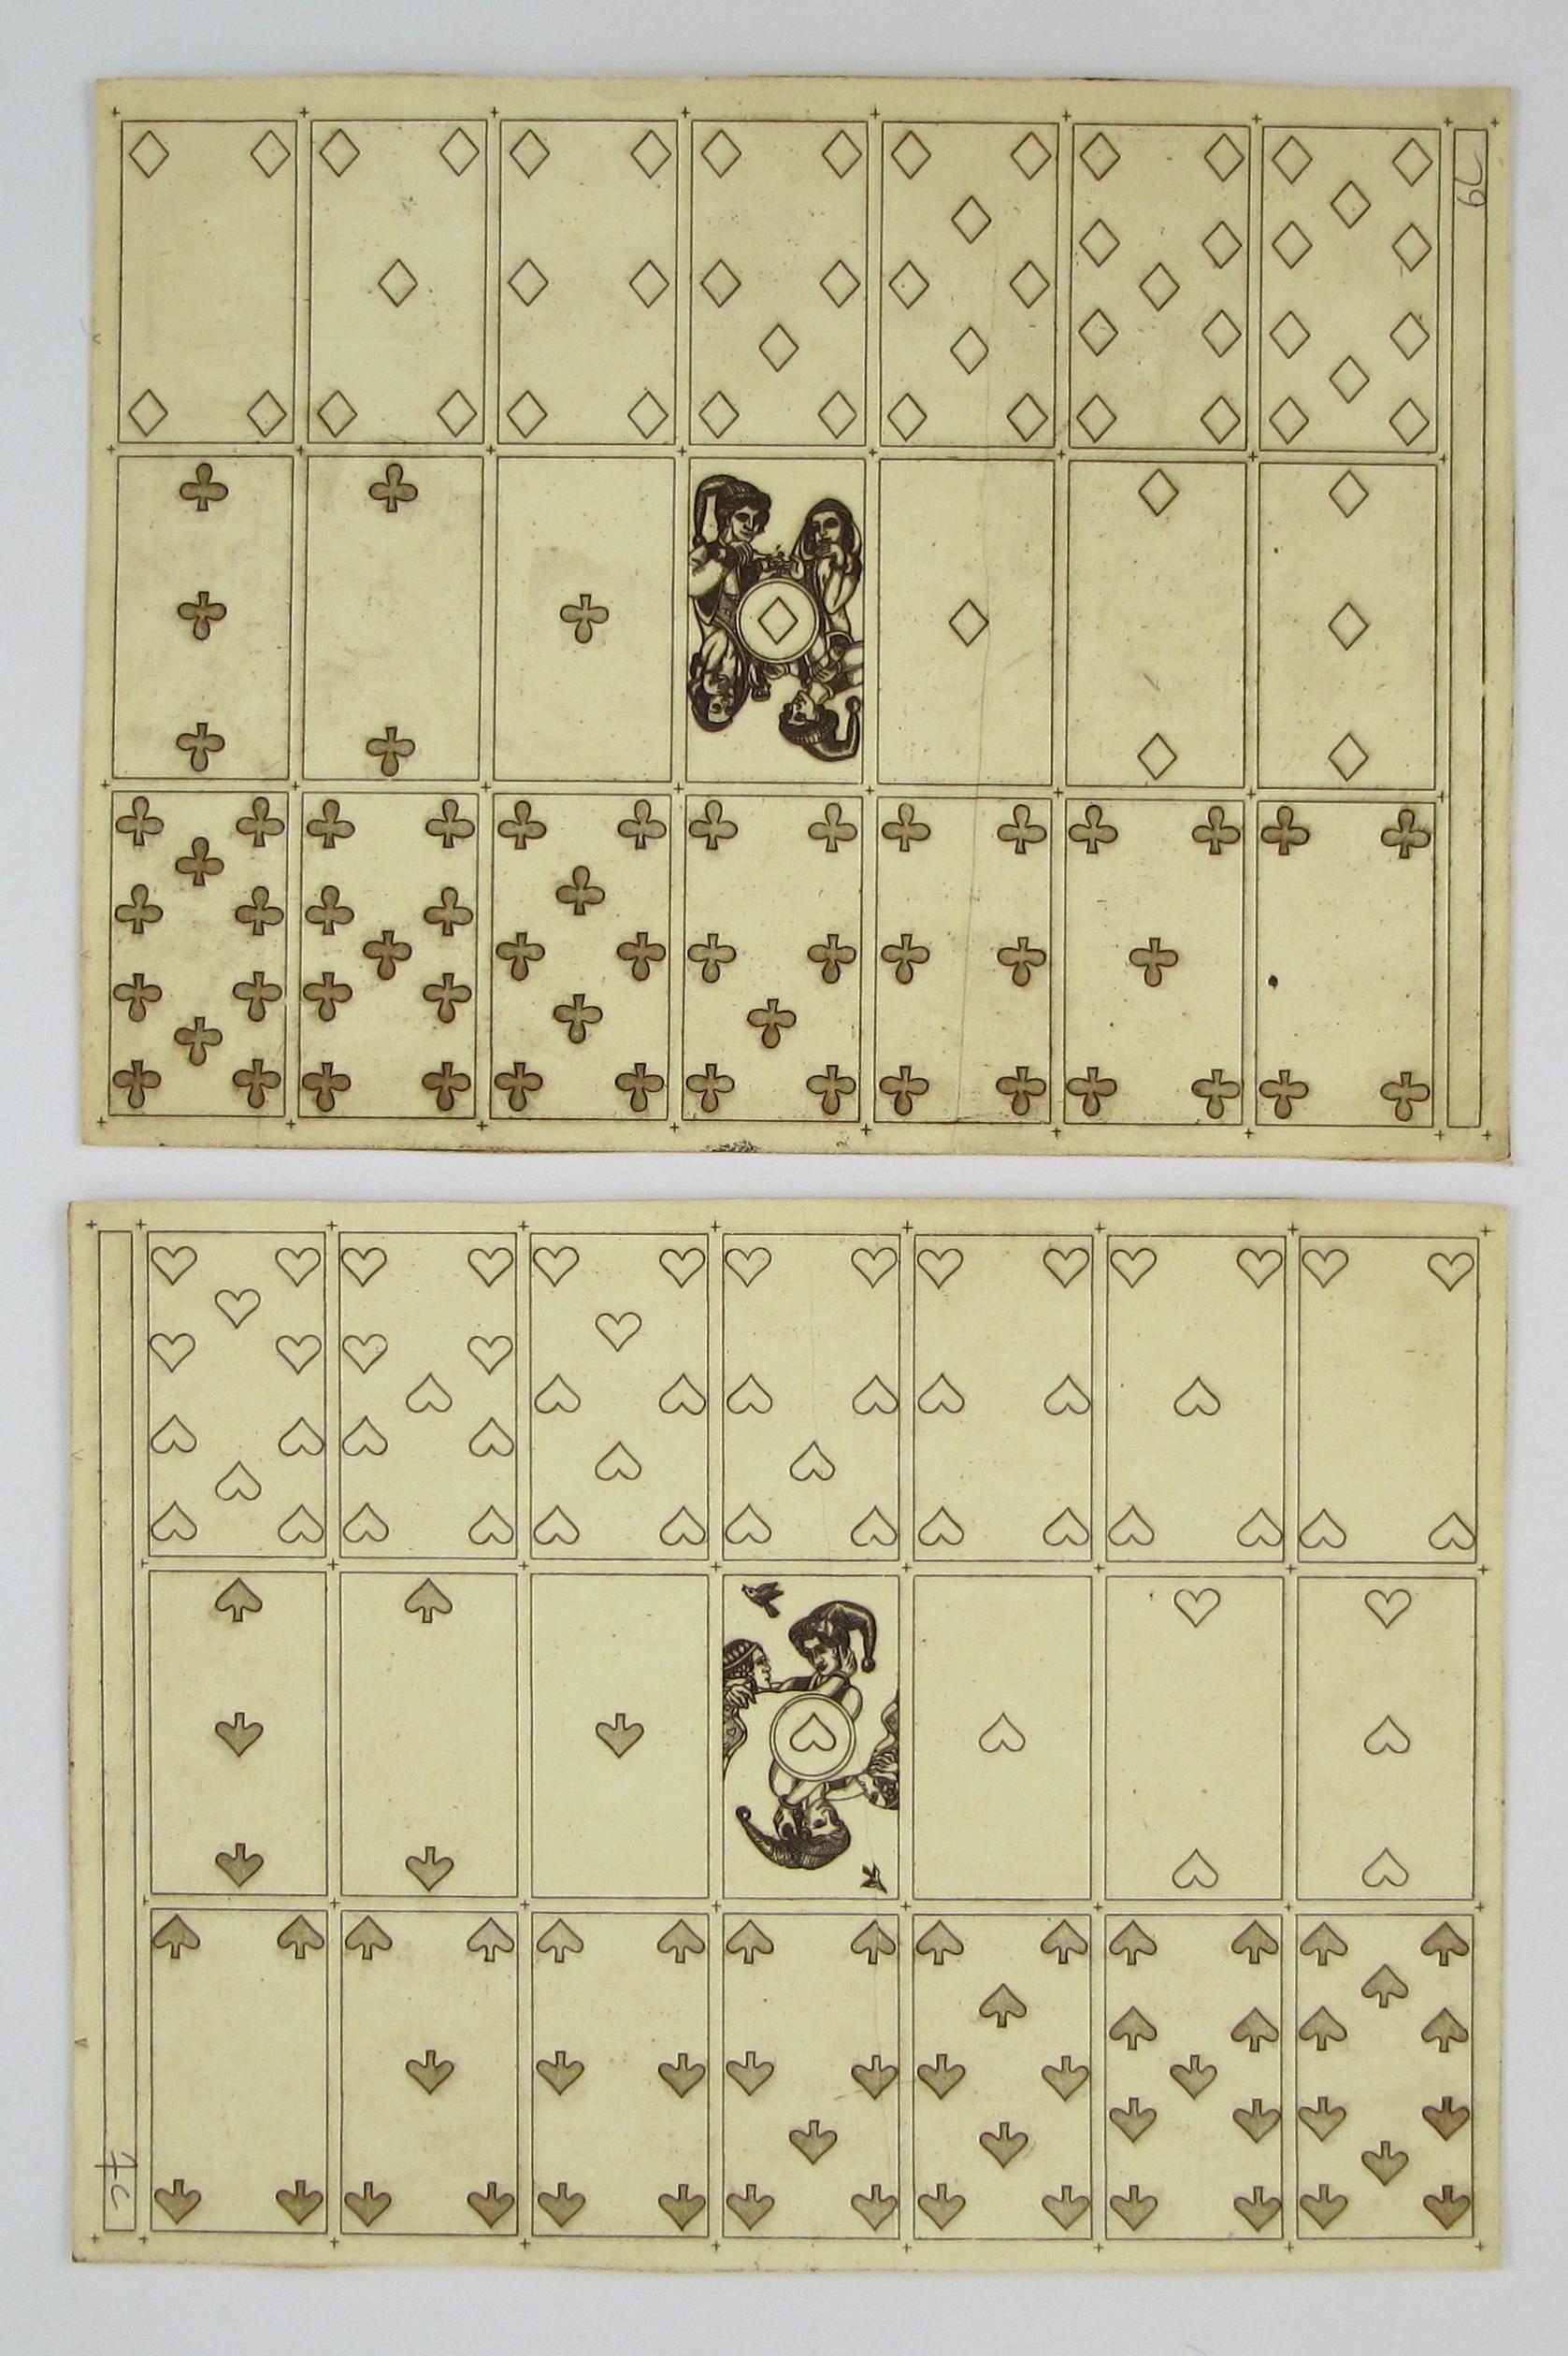 Merry Andrew n° 30, 1989 par Karl Gerich of Bath - Deux échantillons d'impression de cartes de jeu